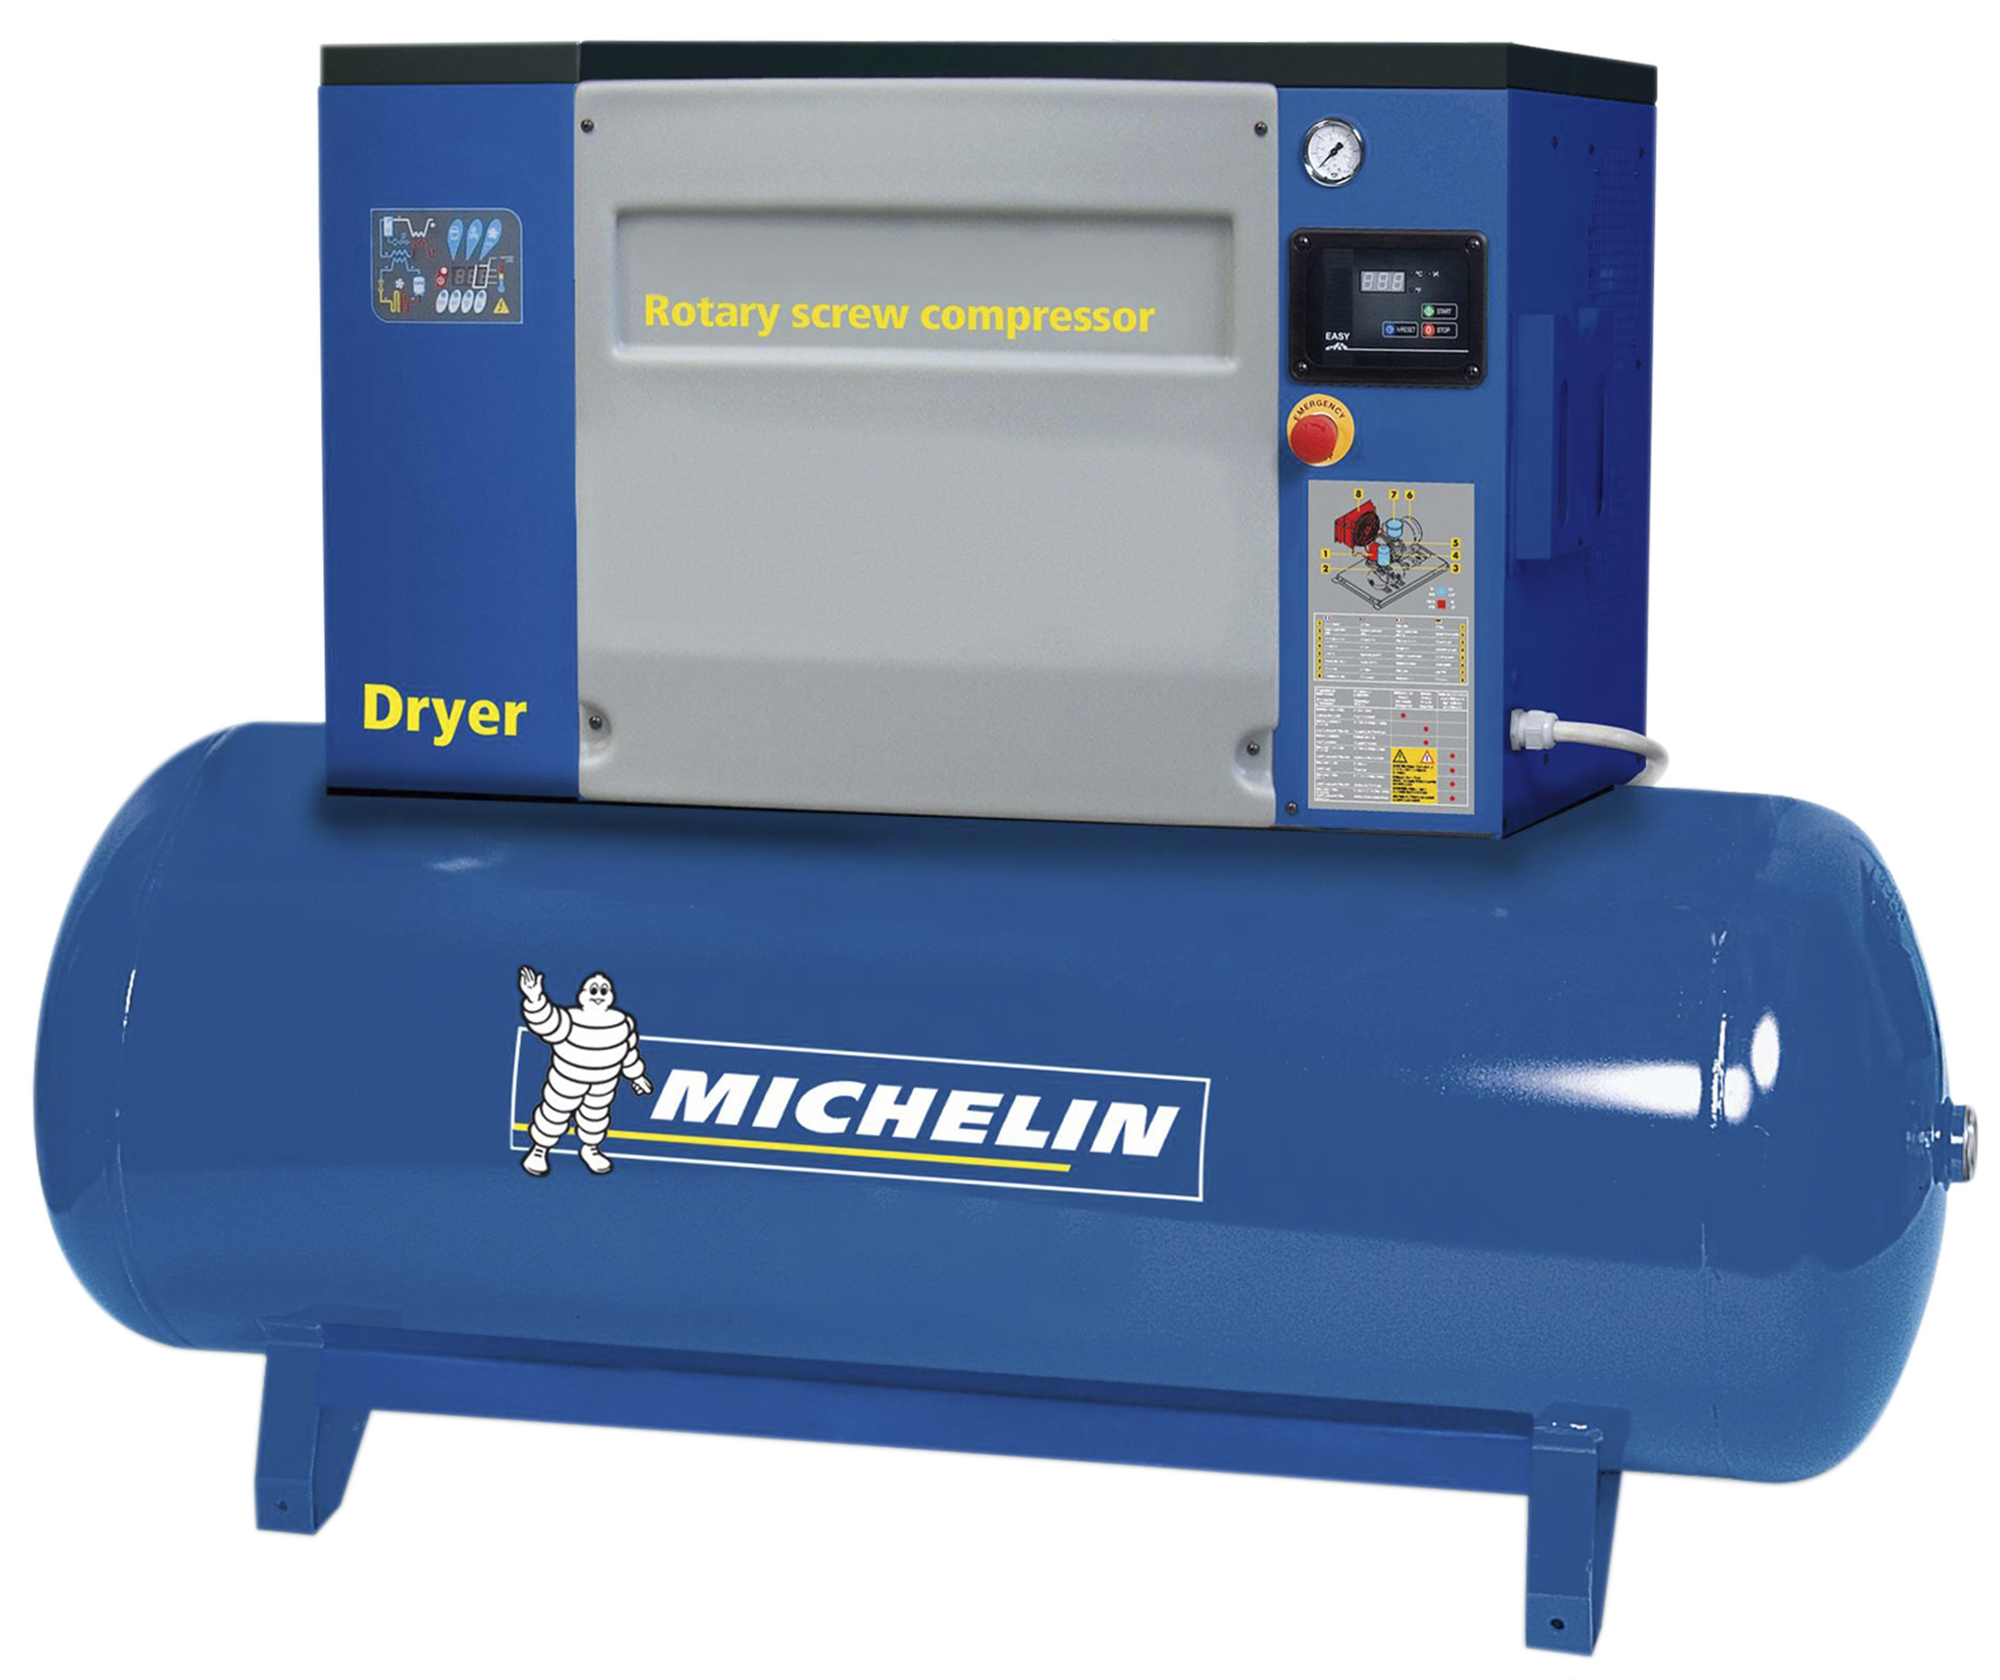 Compresor de tornillo michelin ca-rsxd5,5/300 de 5.5 cv y 300l de depósito